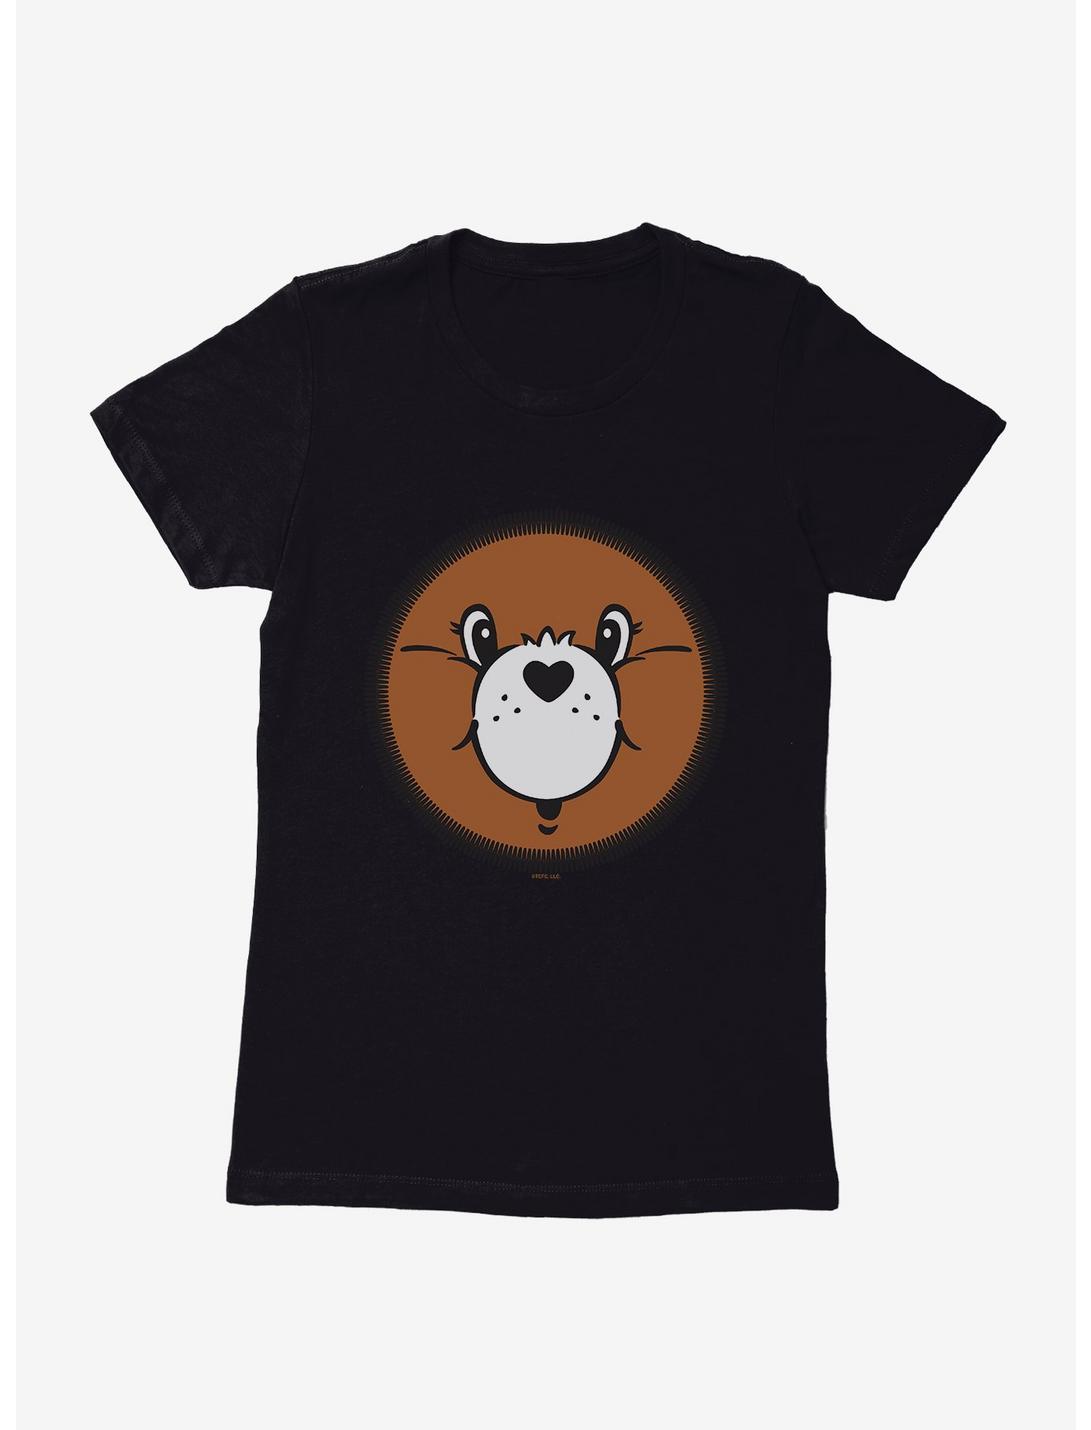 Care Bears Tenderheart Bear Face Womens T-Shirt, BLACK, hi-res